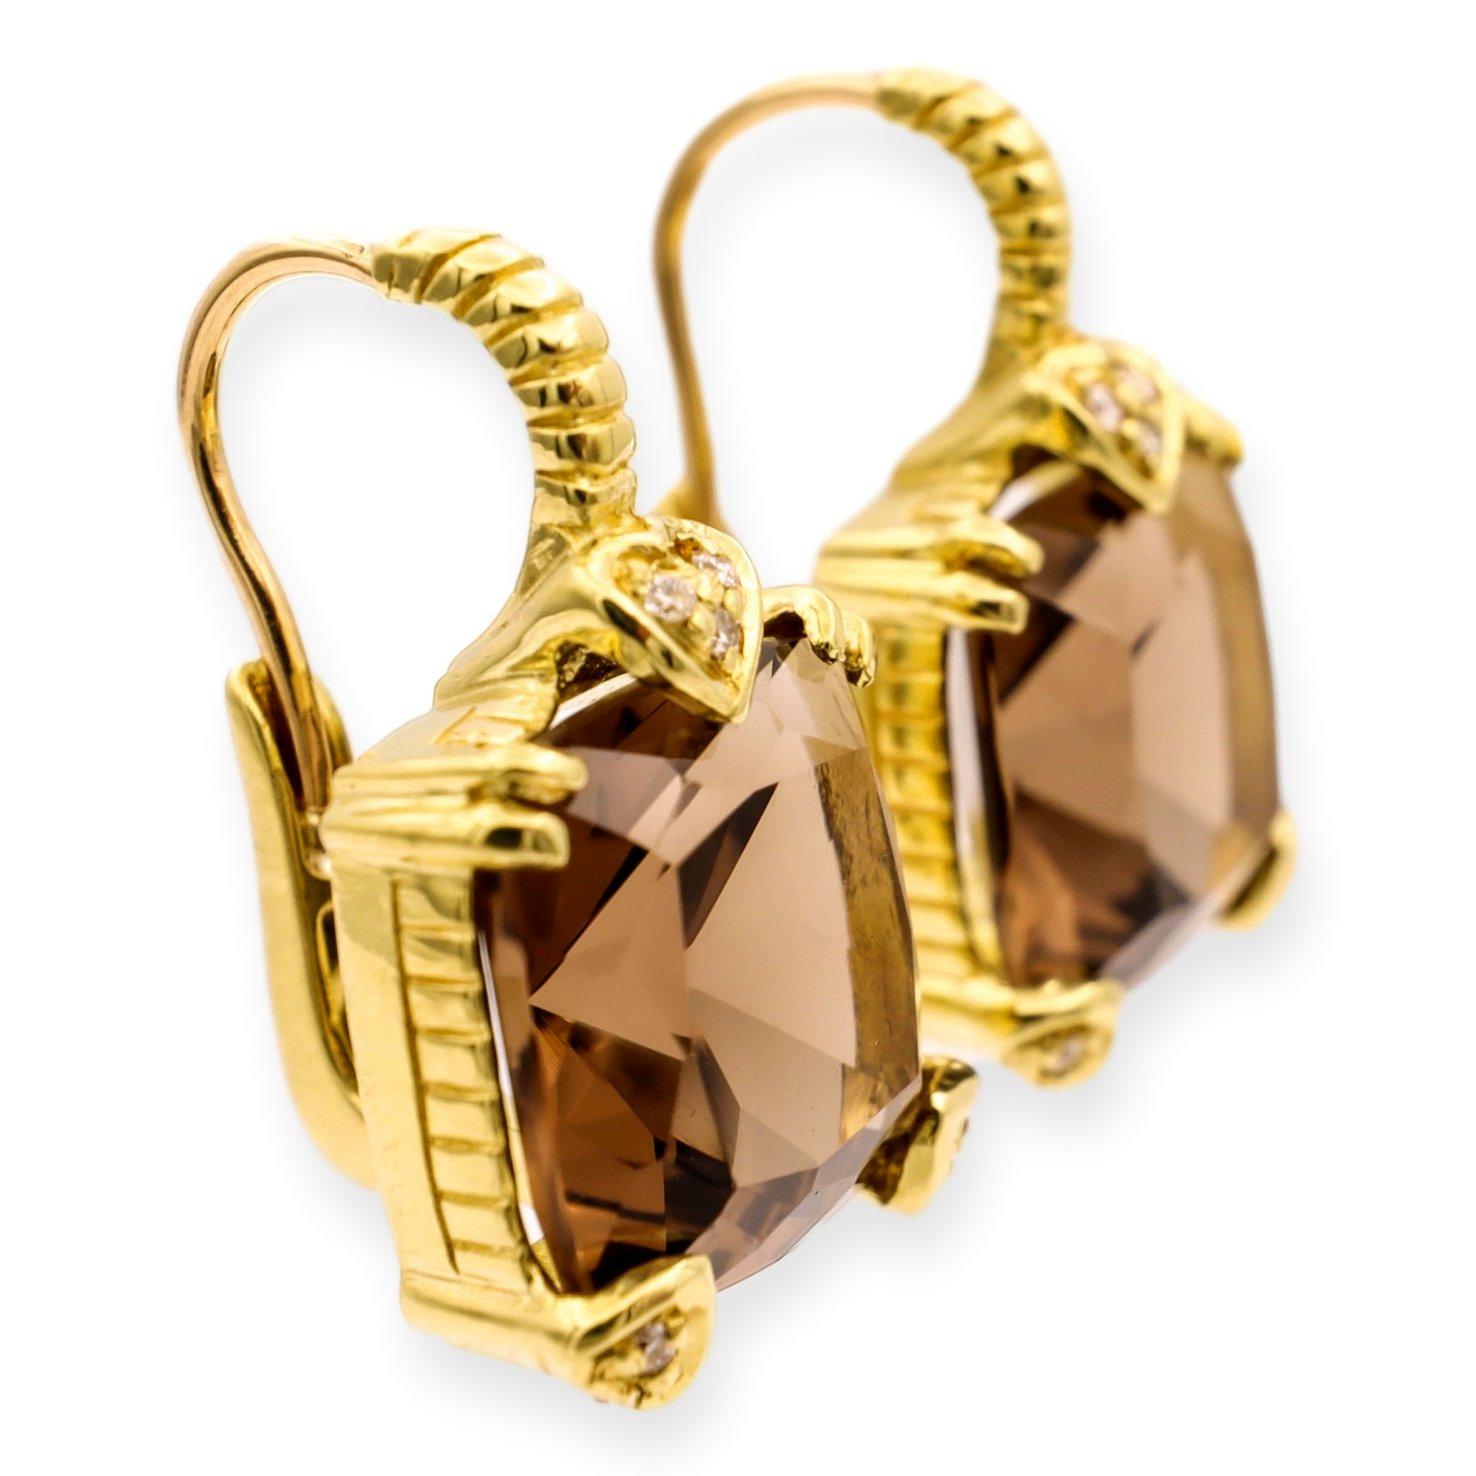 Die Judith Ripka Vintage Lever-Back-Ohrringe sind eine klassische und elegante Wahl. Die Ohrringe sind fein aus 18 Karat Gelbgold gefertigt. Die Ohrringe sind mit 2 wunderschönen kissenförmigen braunen Rauchquarzsteinen verziert. Der Edelstein wird